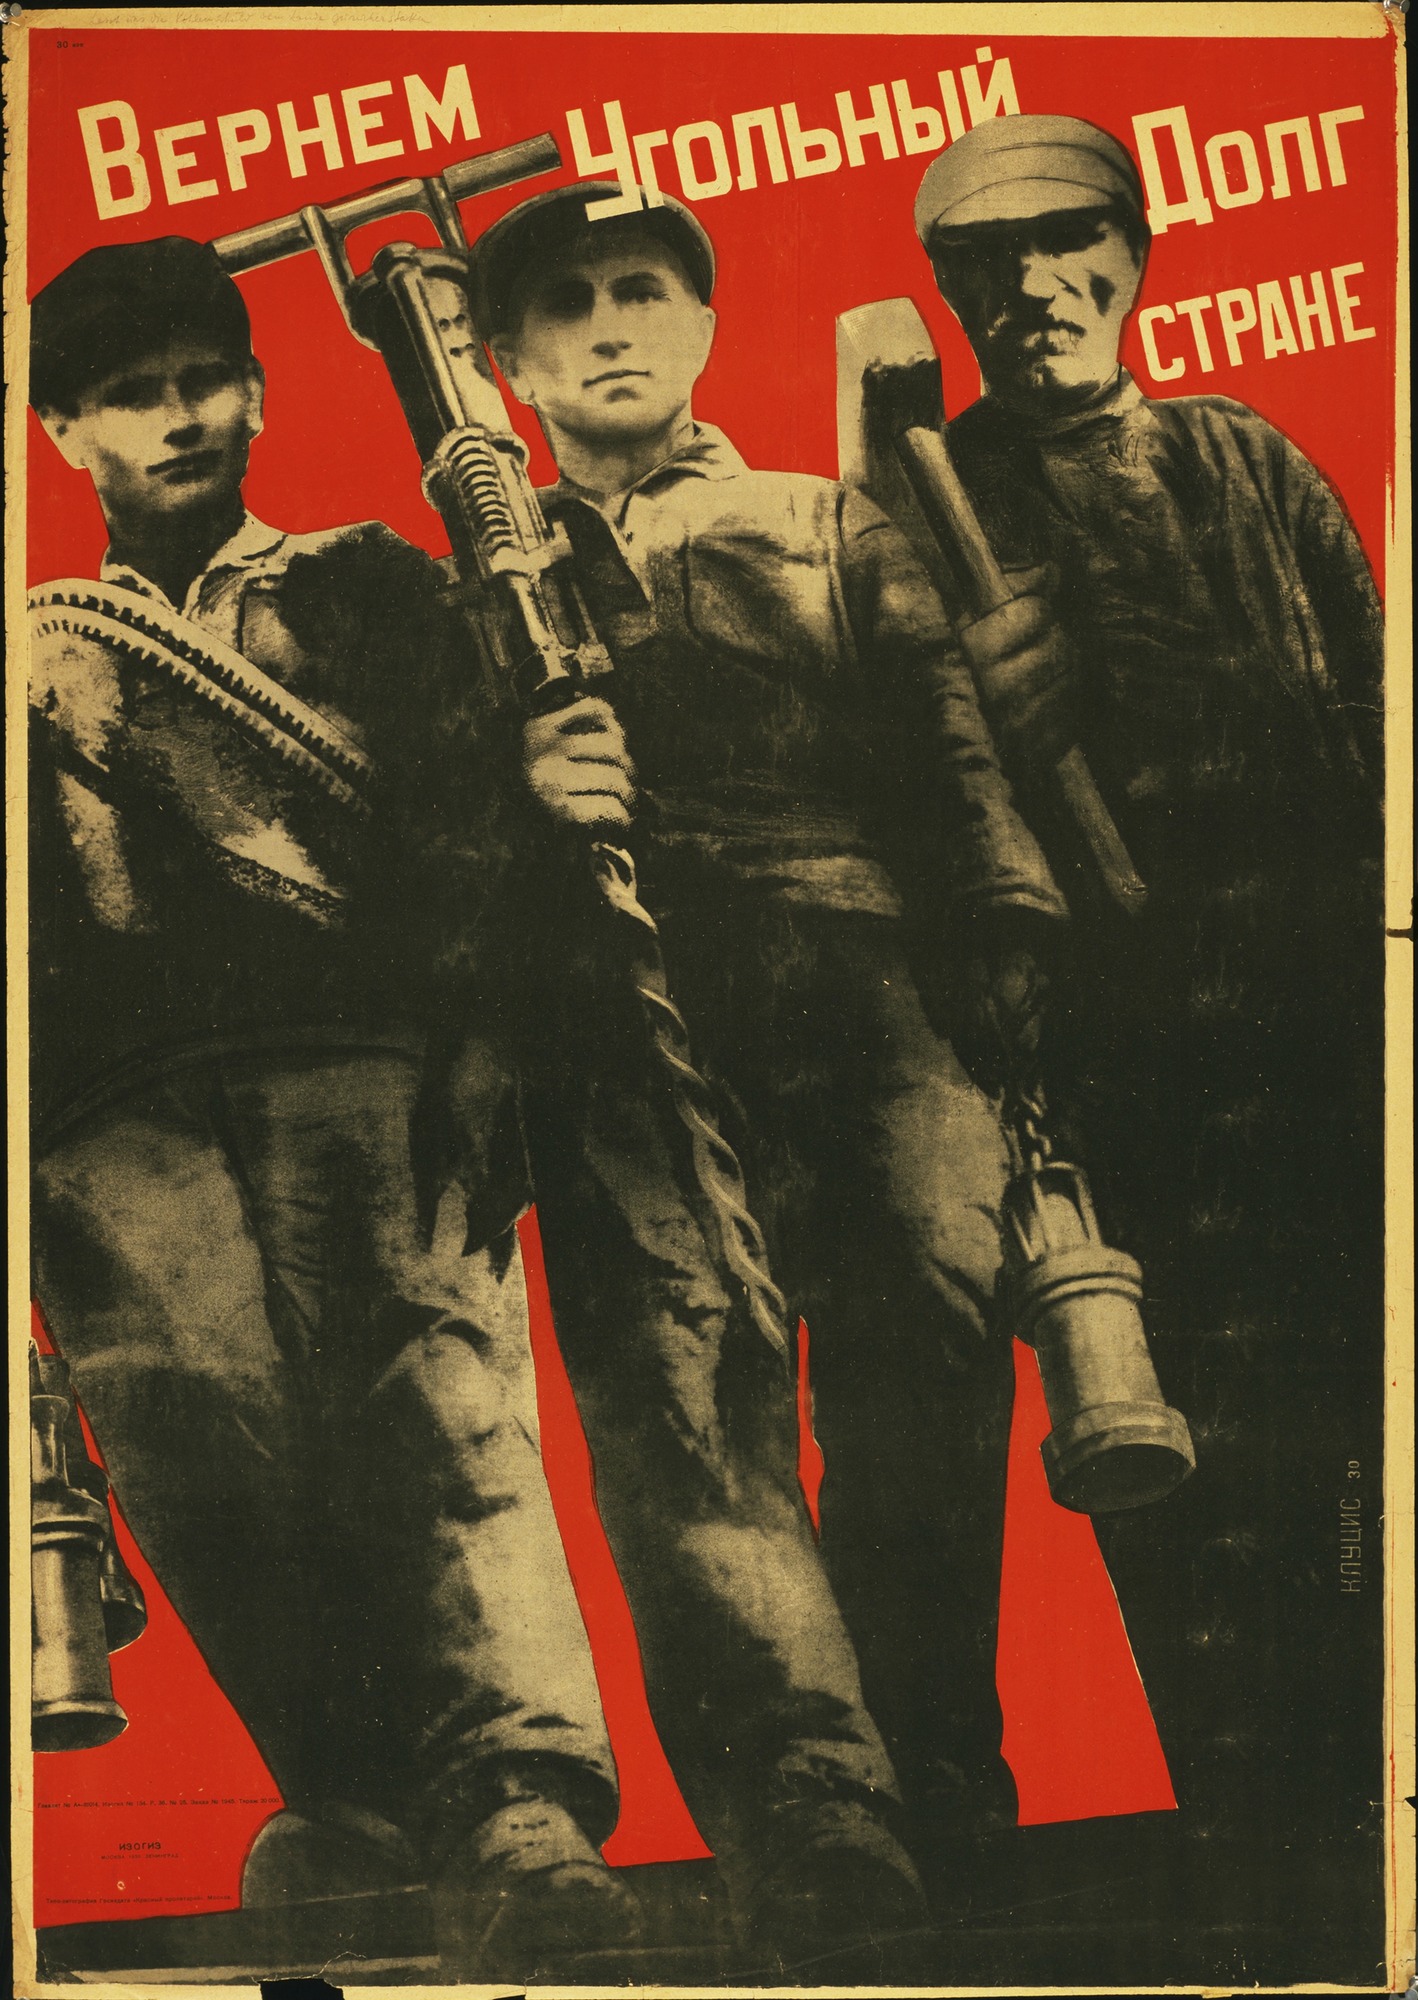 Soviet constructivism poster Design for a loudspeaker by Gustav Klutsis 1920s